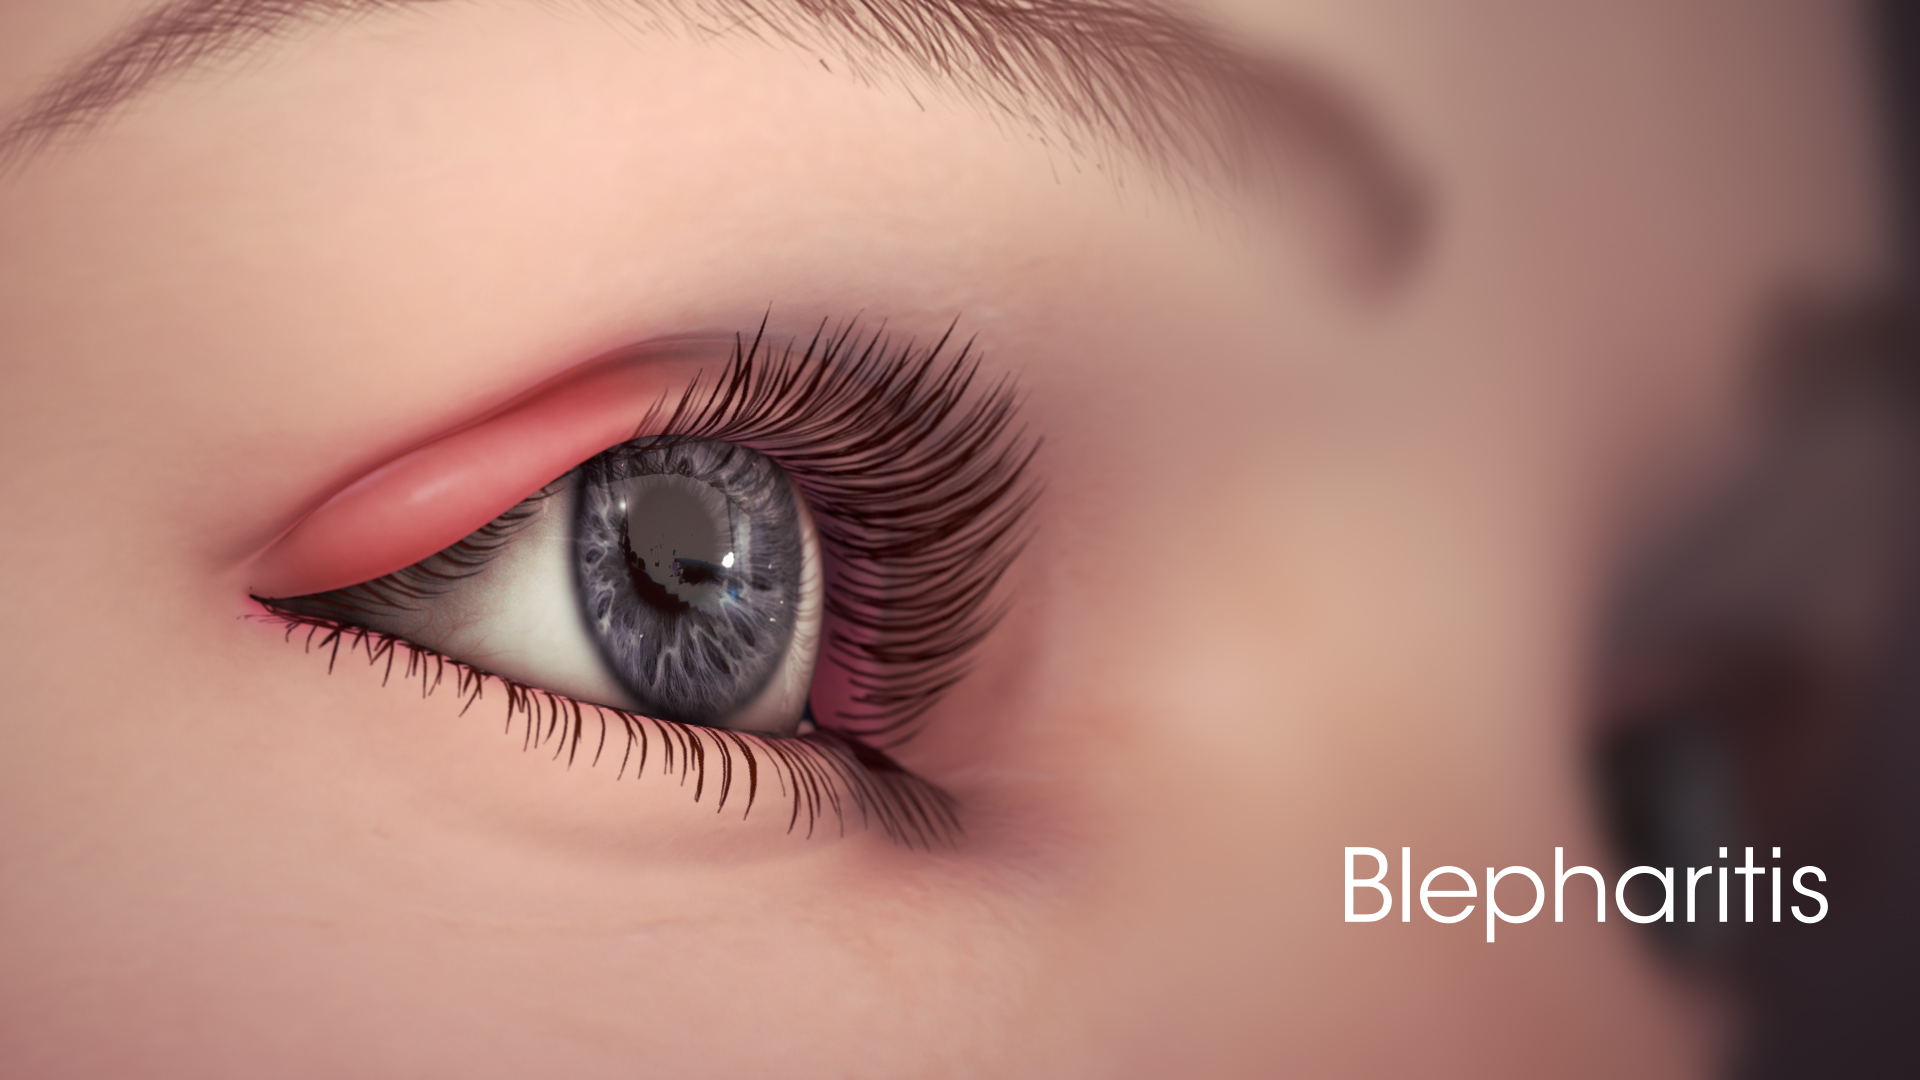 Medical Animation Illustrating Blepharitis